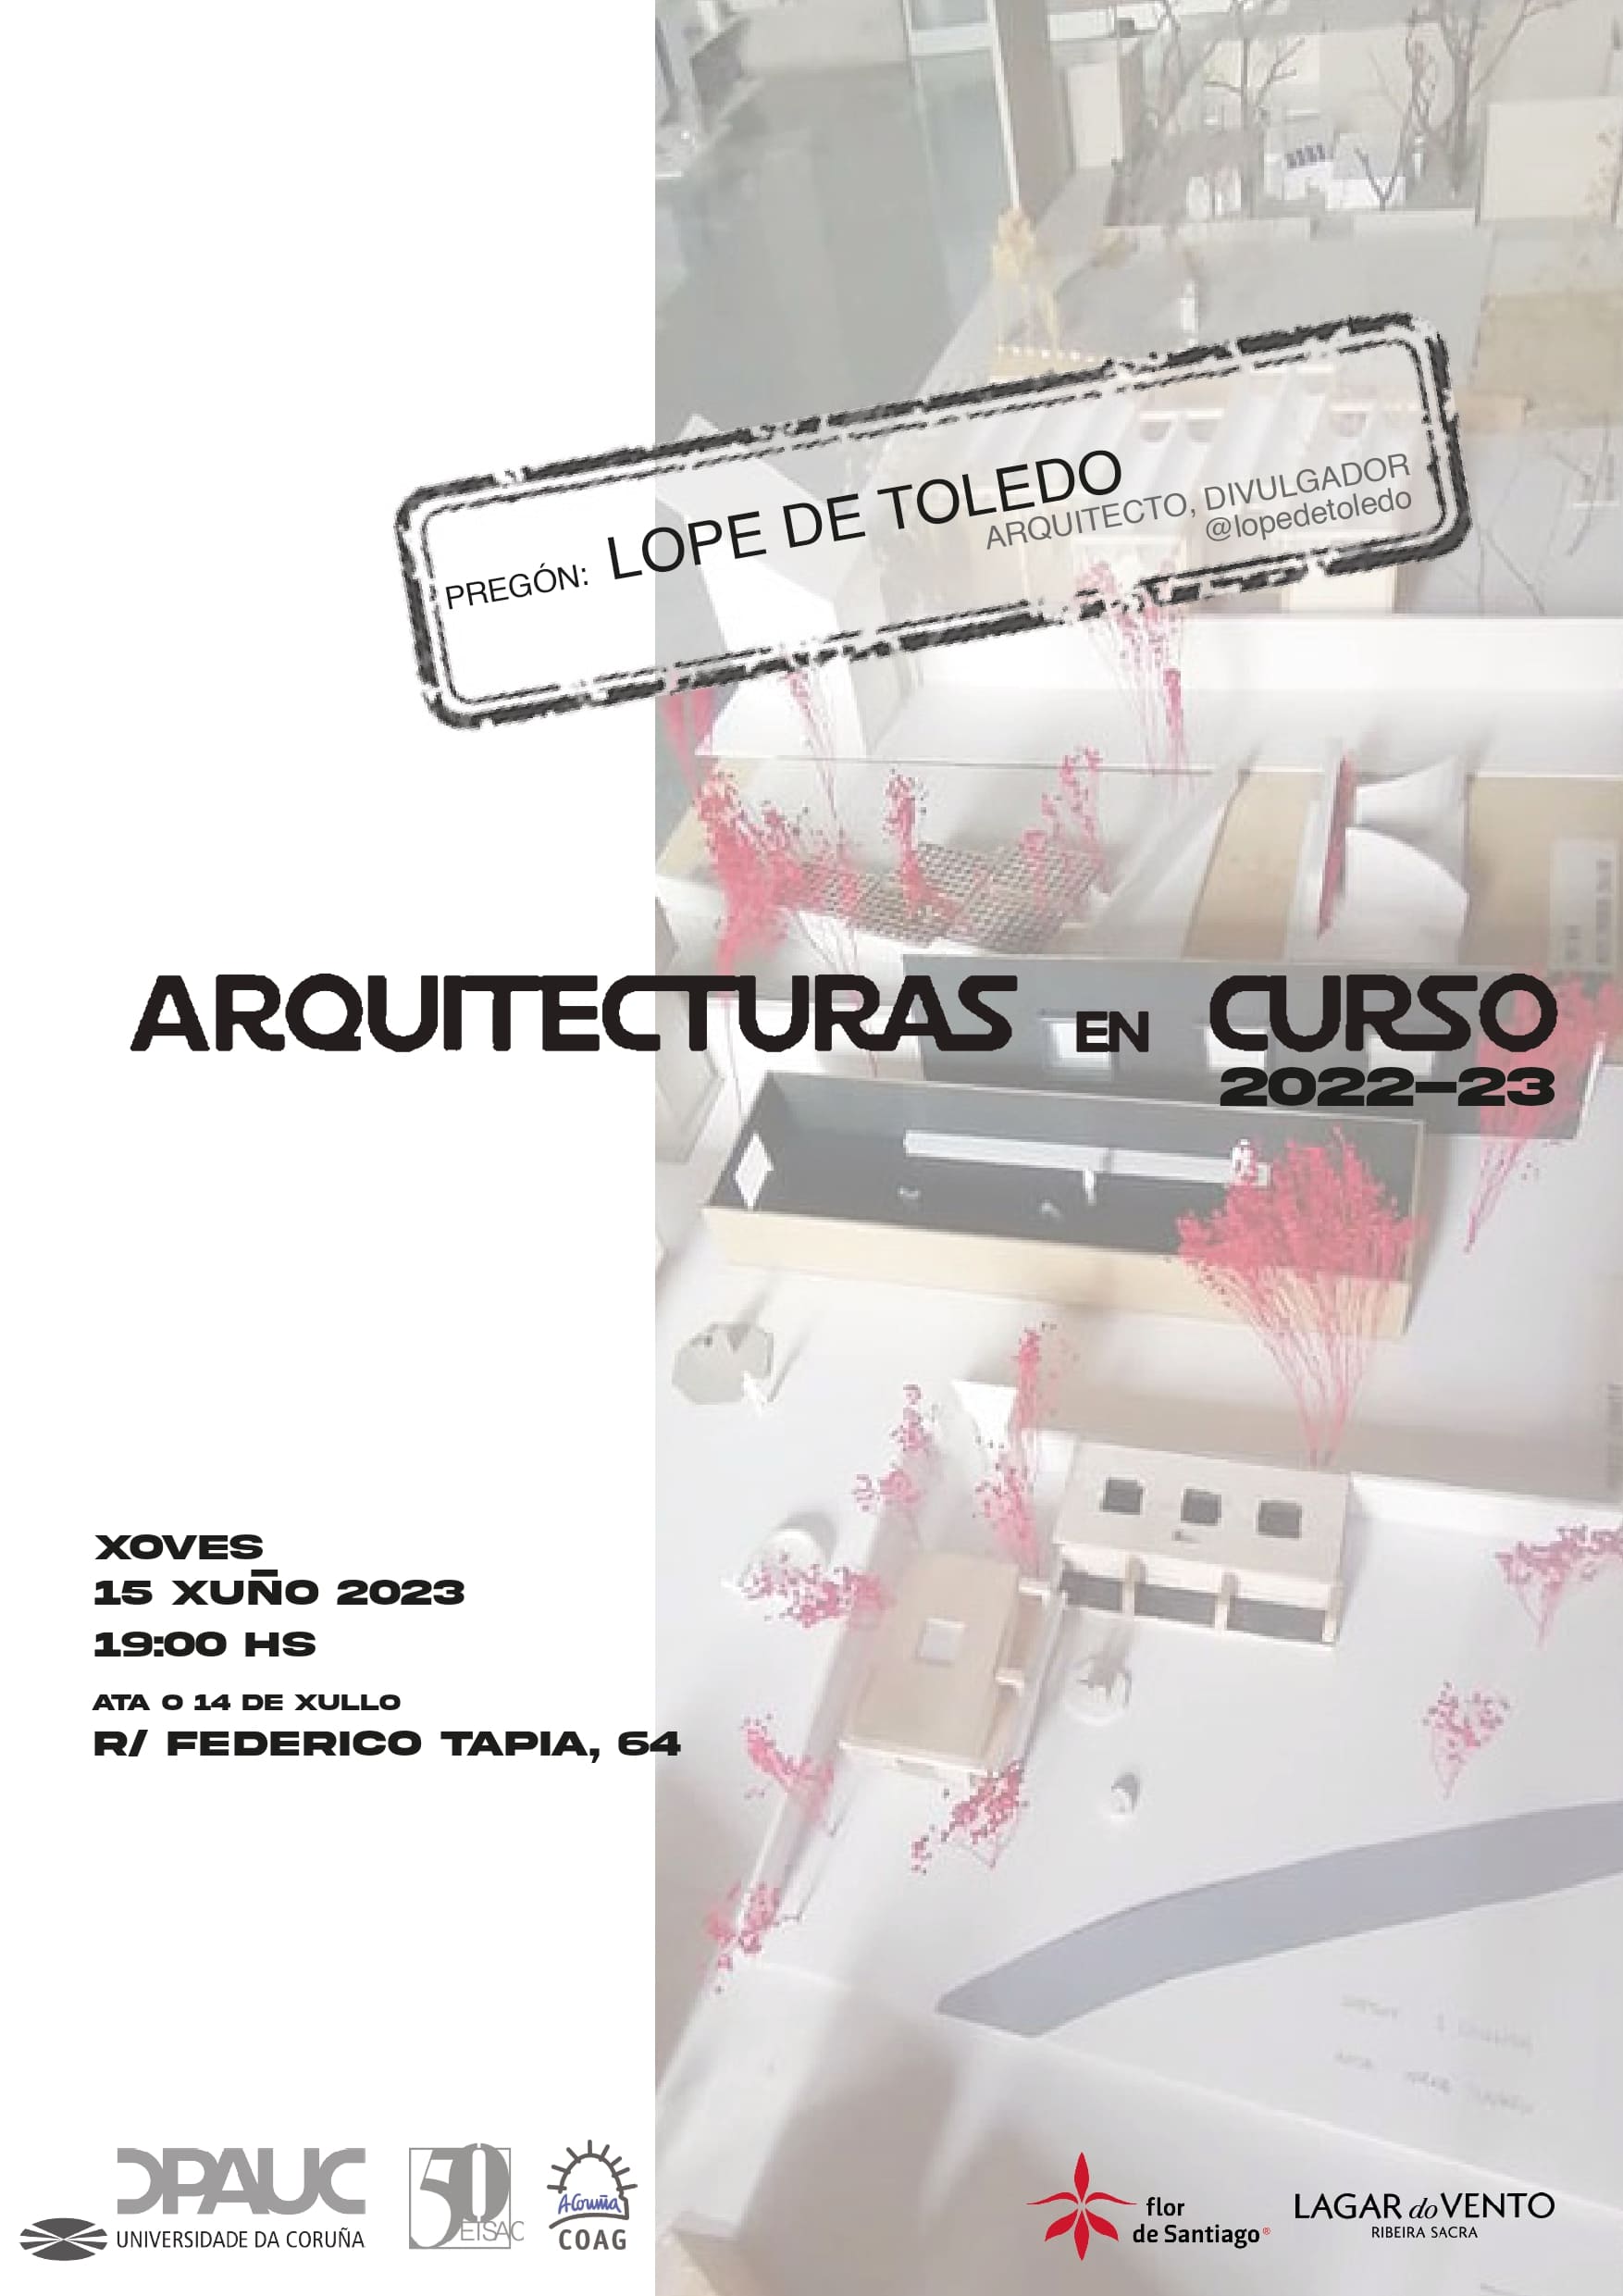 Delegación da Coruña – Exposición “Arquitecturas en curso 2022-23